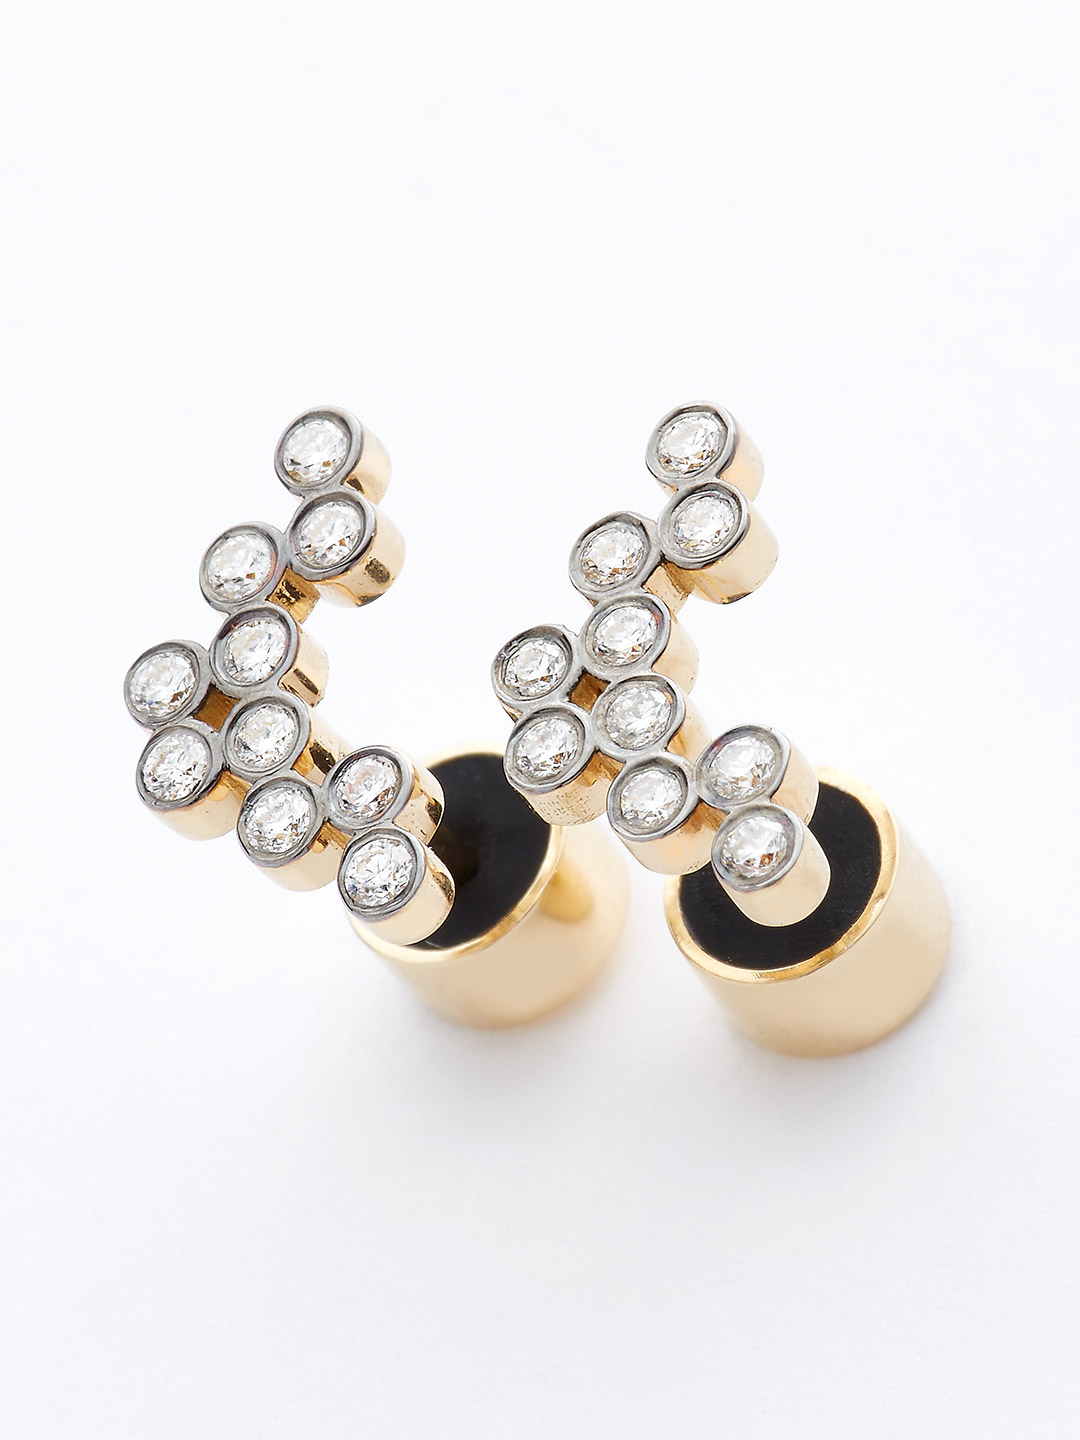 Diamond Pierced Earring - 18K Yellow Gold